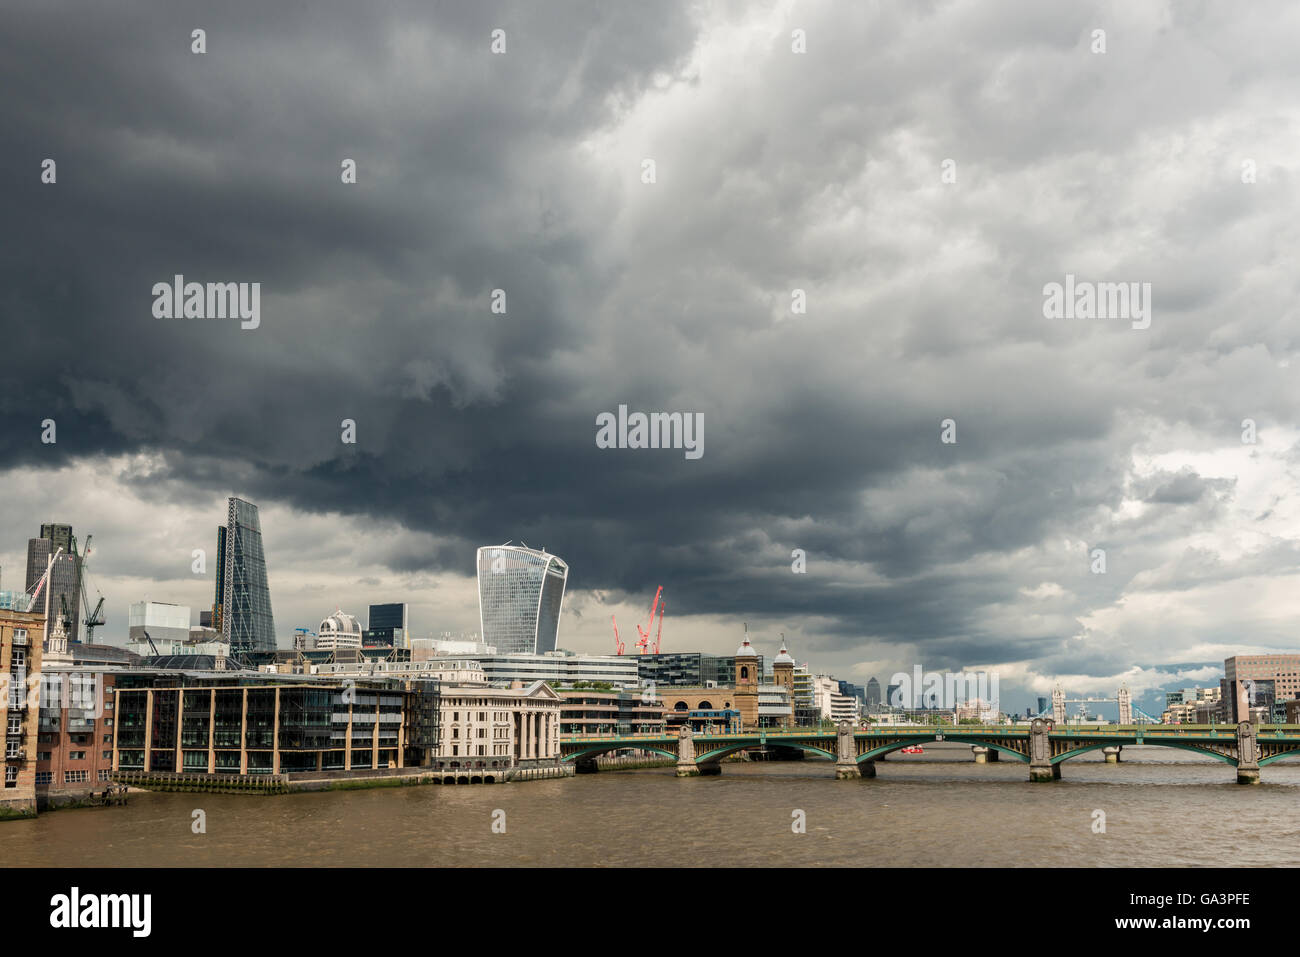 Londres, Reino Unido - 25 de junio de 2016: skyline londinense con moody cielo segundos antes de una tormenta, con Southwark Bridge Foto de stock